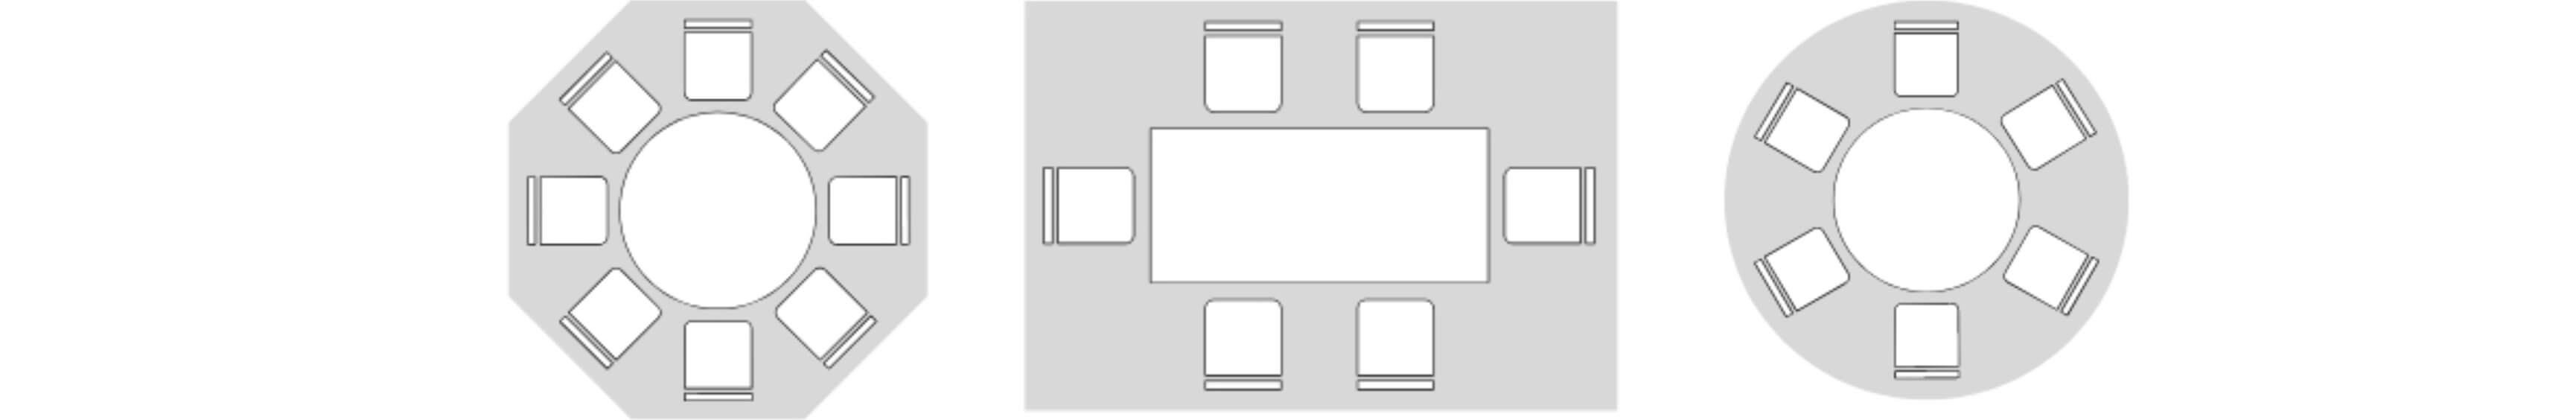 Room Diagram 2